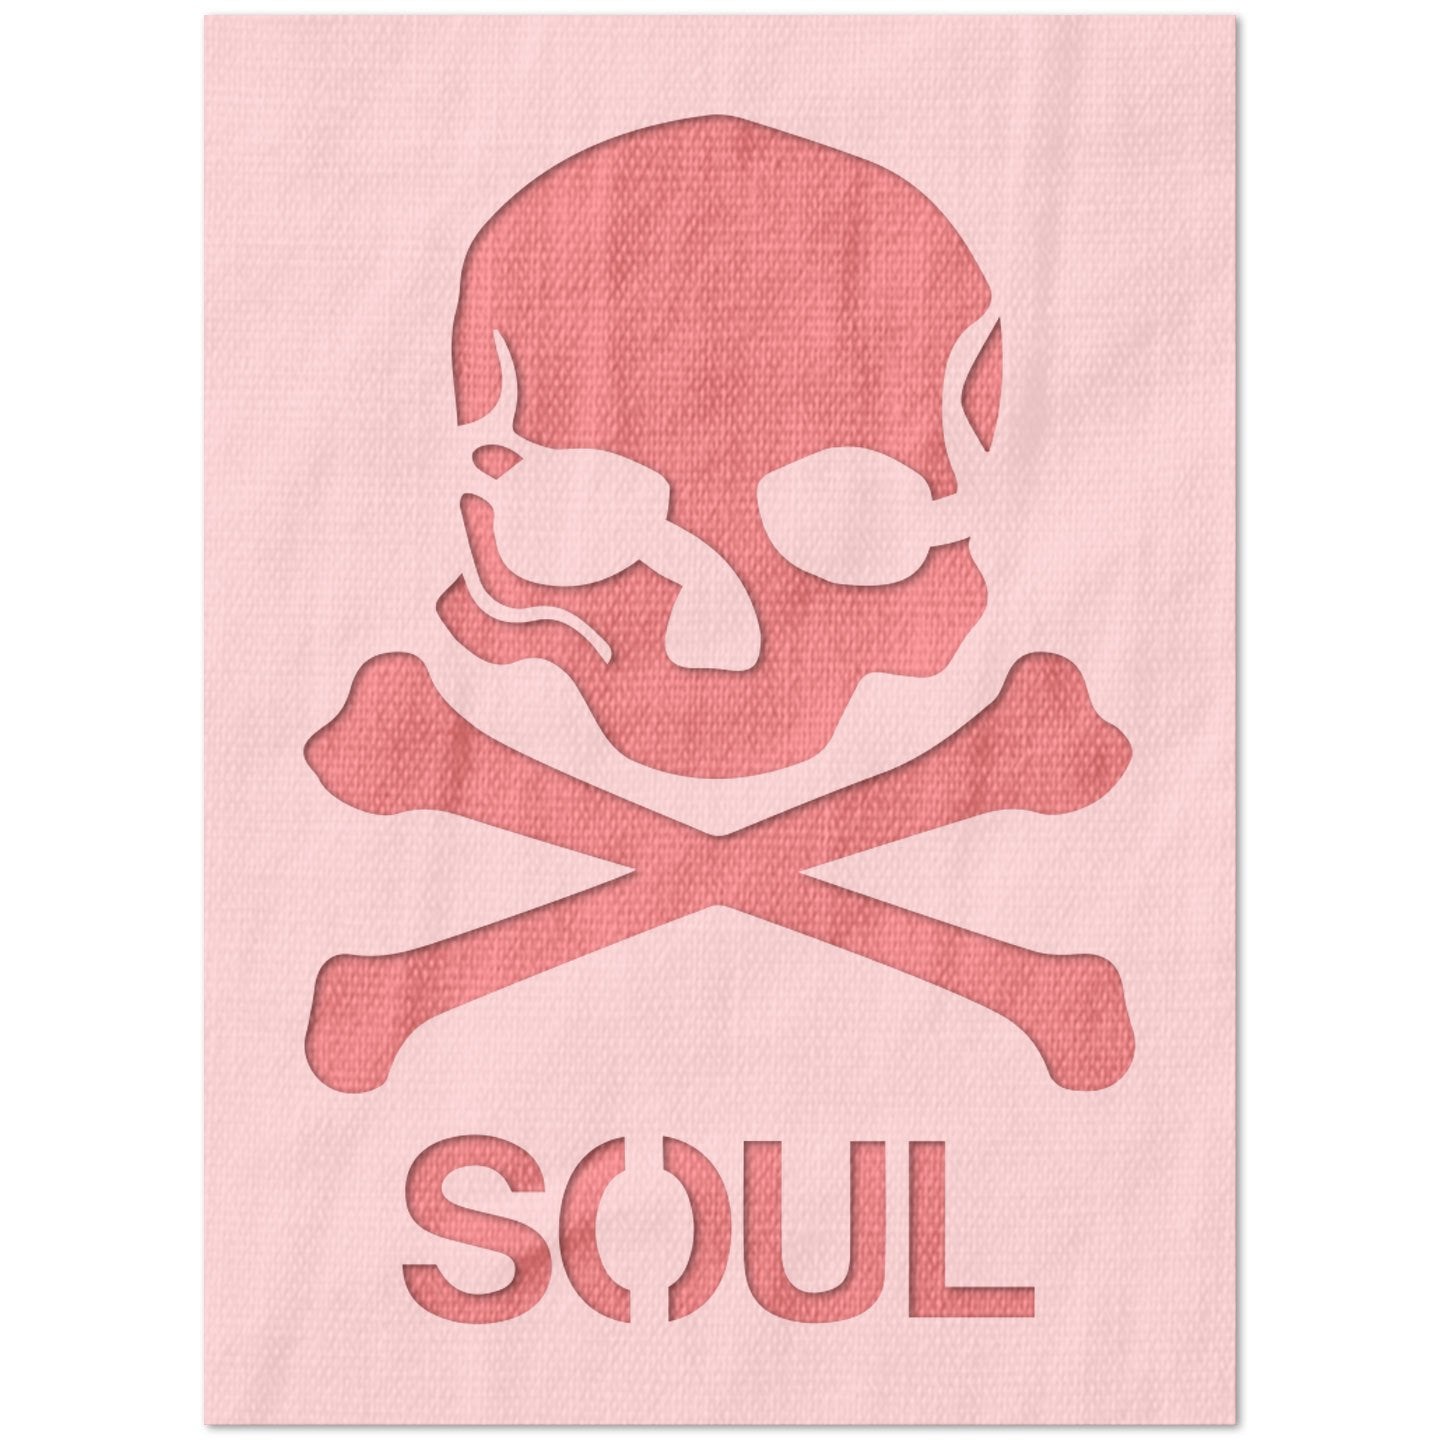 Skull and Crossbones Soul Stencil